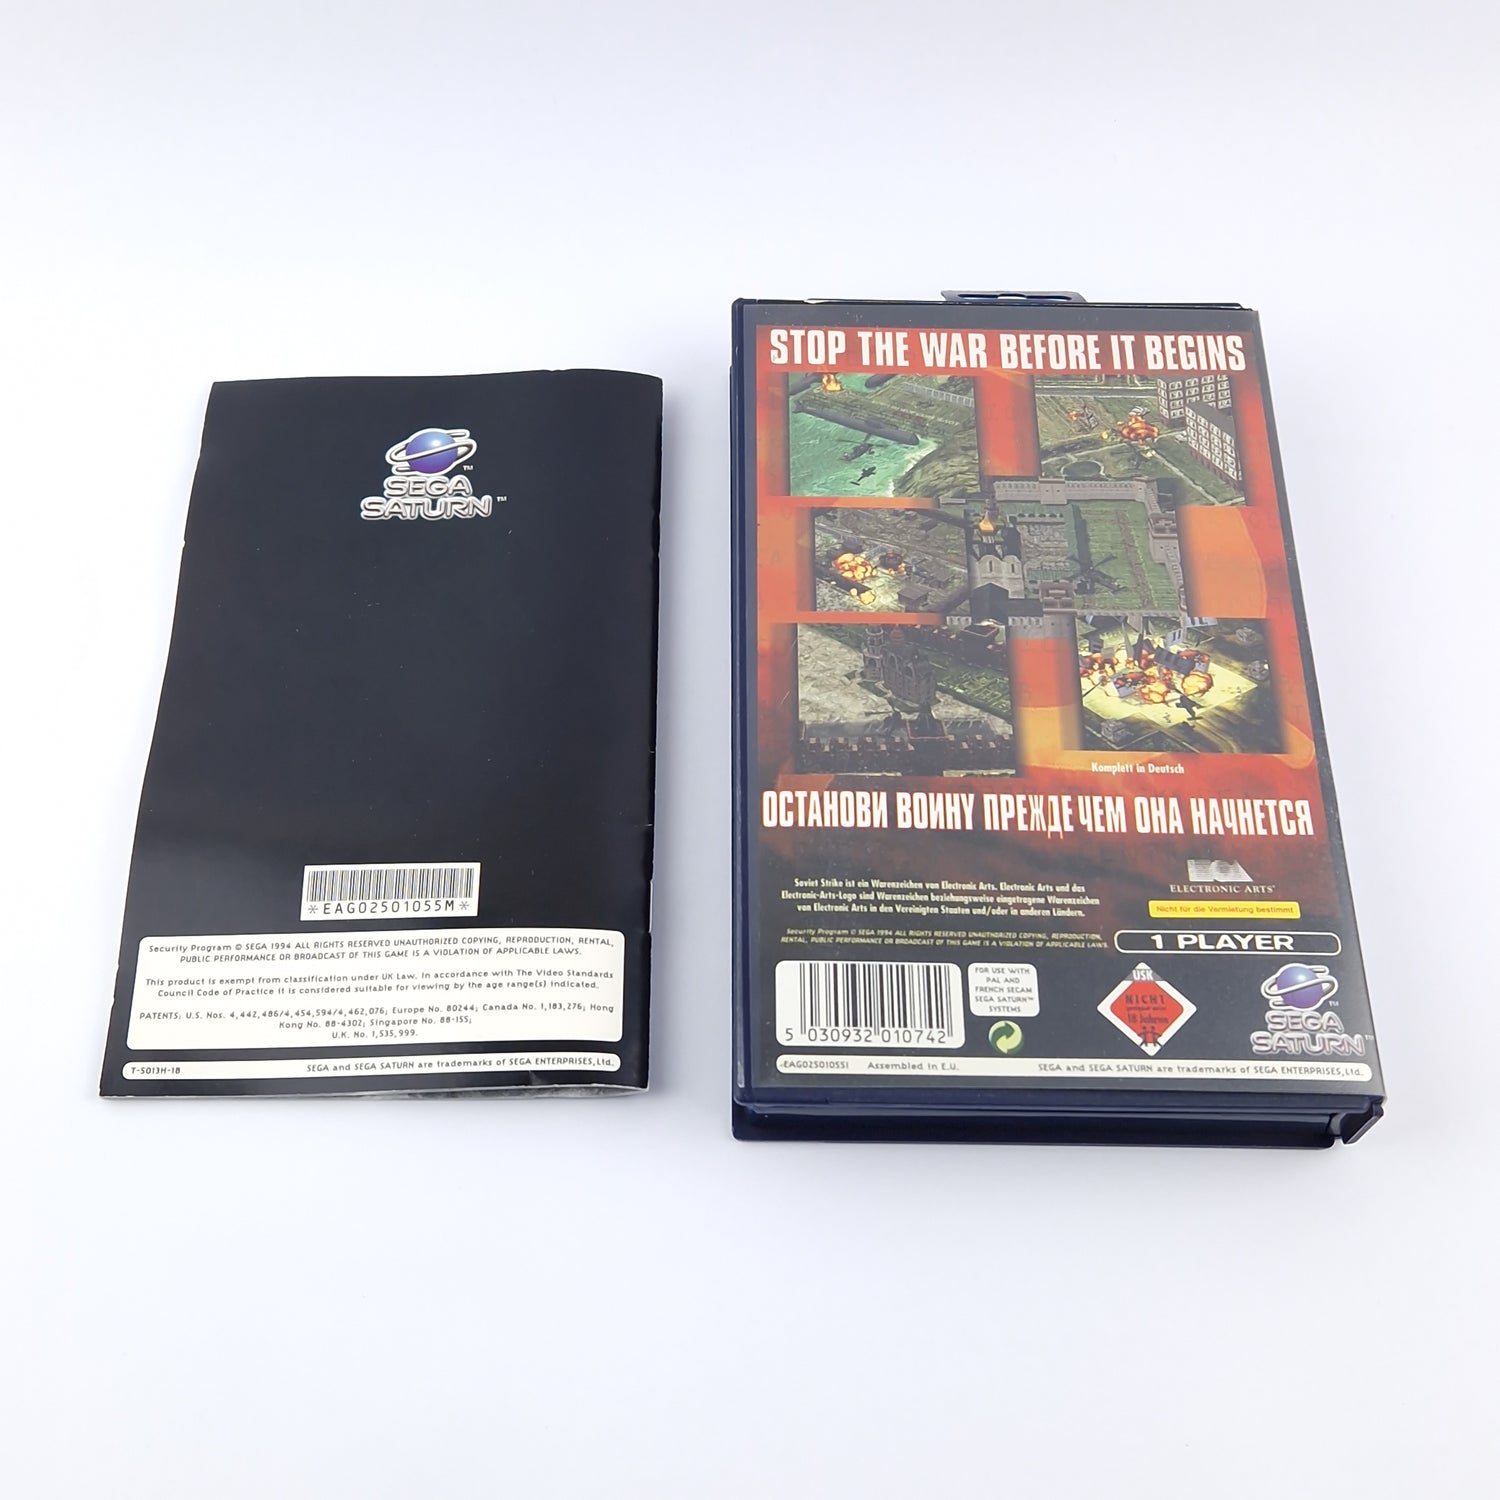 Sega Saturn Spiel : Soviet Strike - OVP Anleitung CD Disk | PAL Game USK18